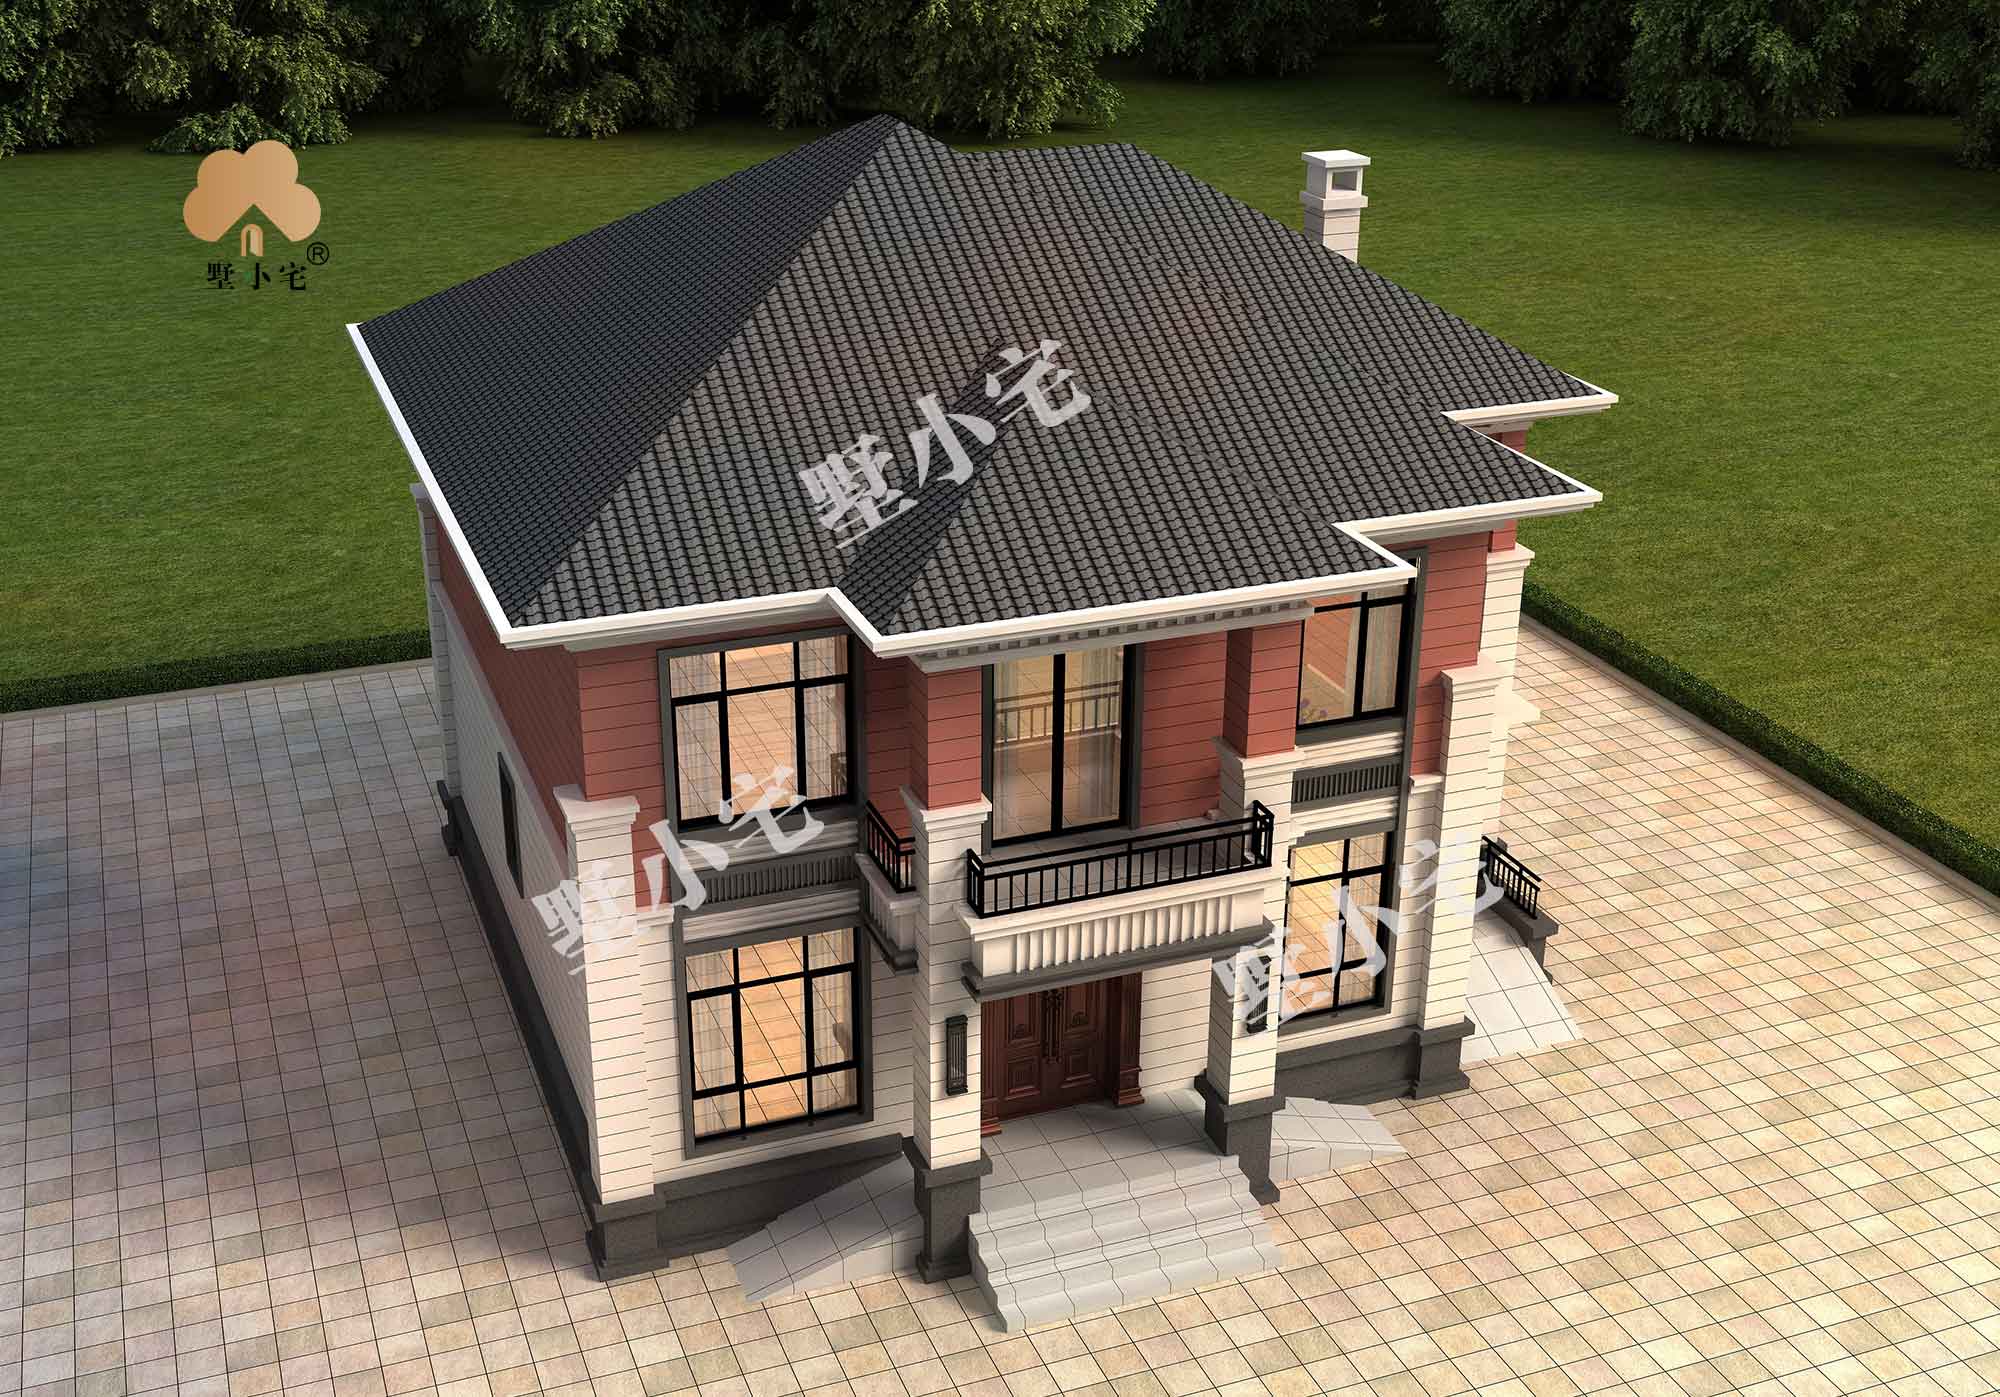 B583【农村房子】受欢迎的农村两层新中式自建房设计图